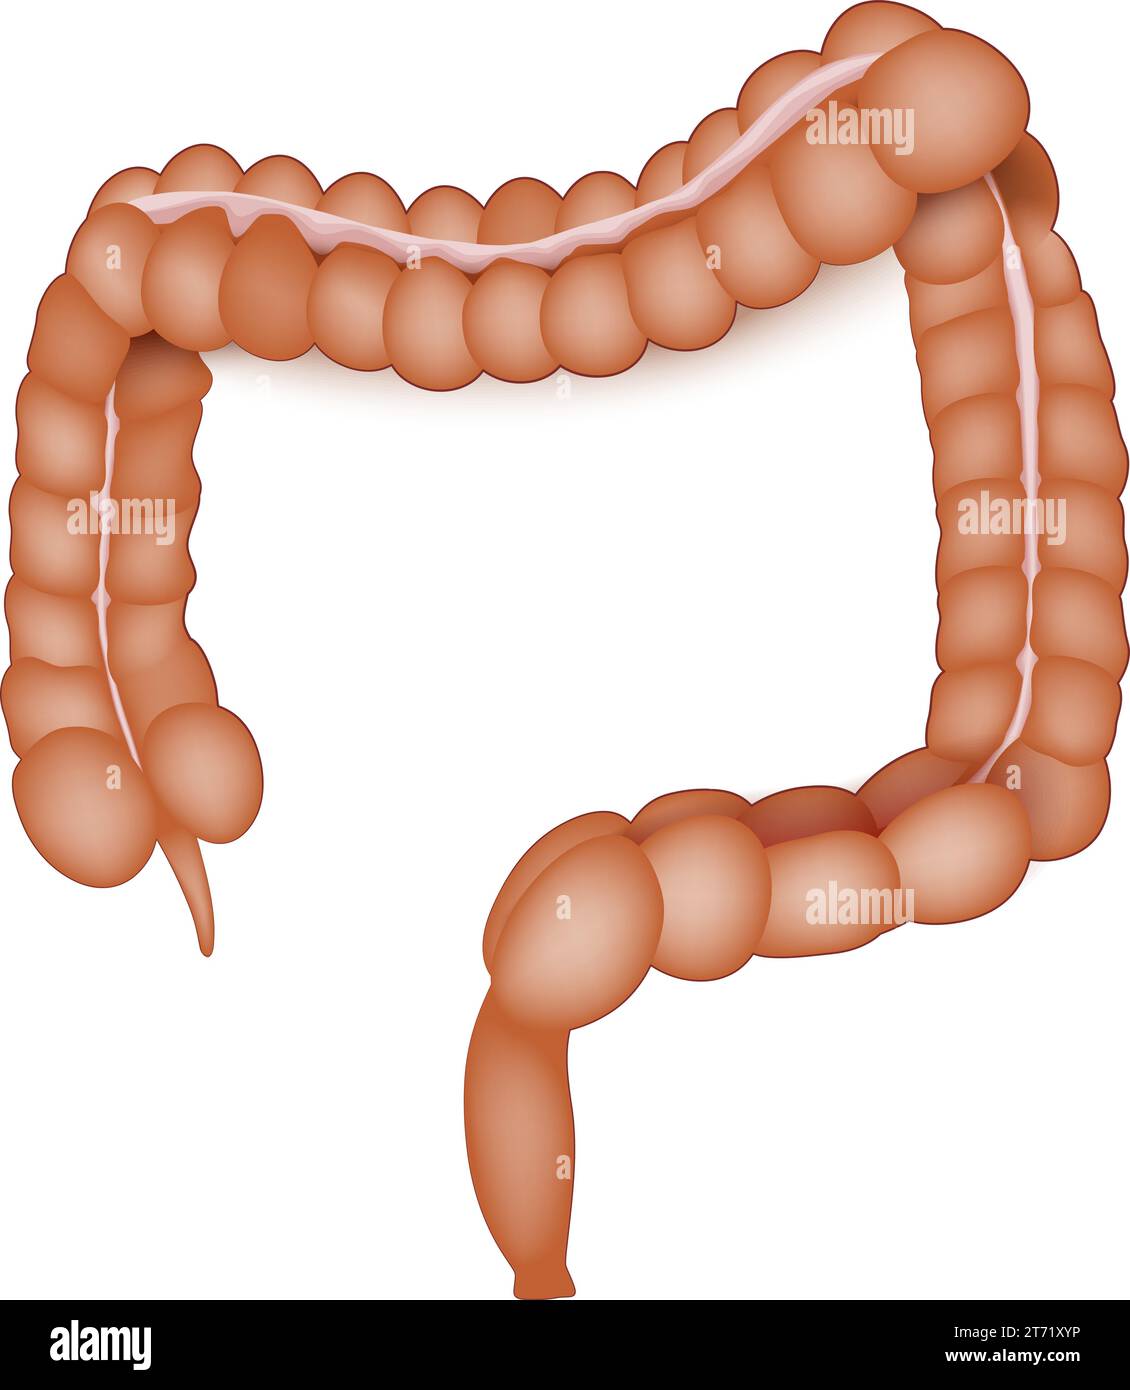 anatomie du gros intestin. Colon humain sur fond blanc. Tube digestif. Gros intestin. Illustration vectorielle Illustration de Vecteur